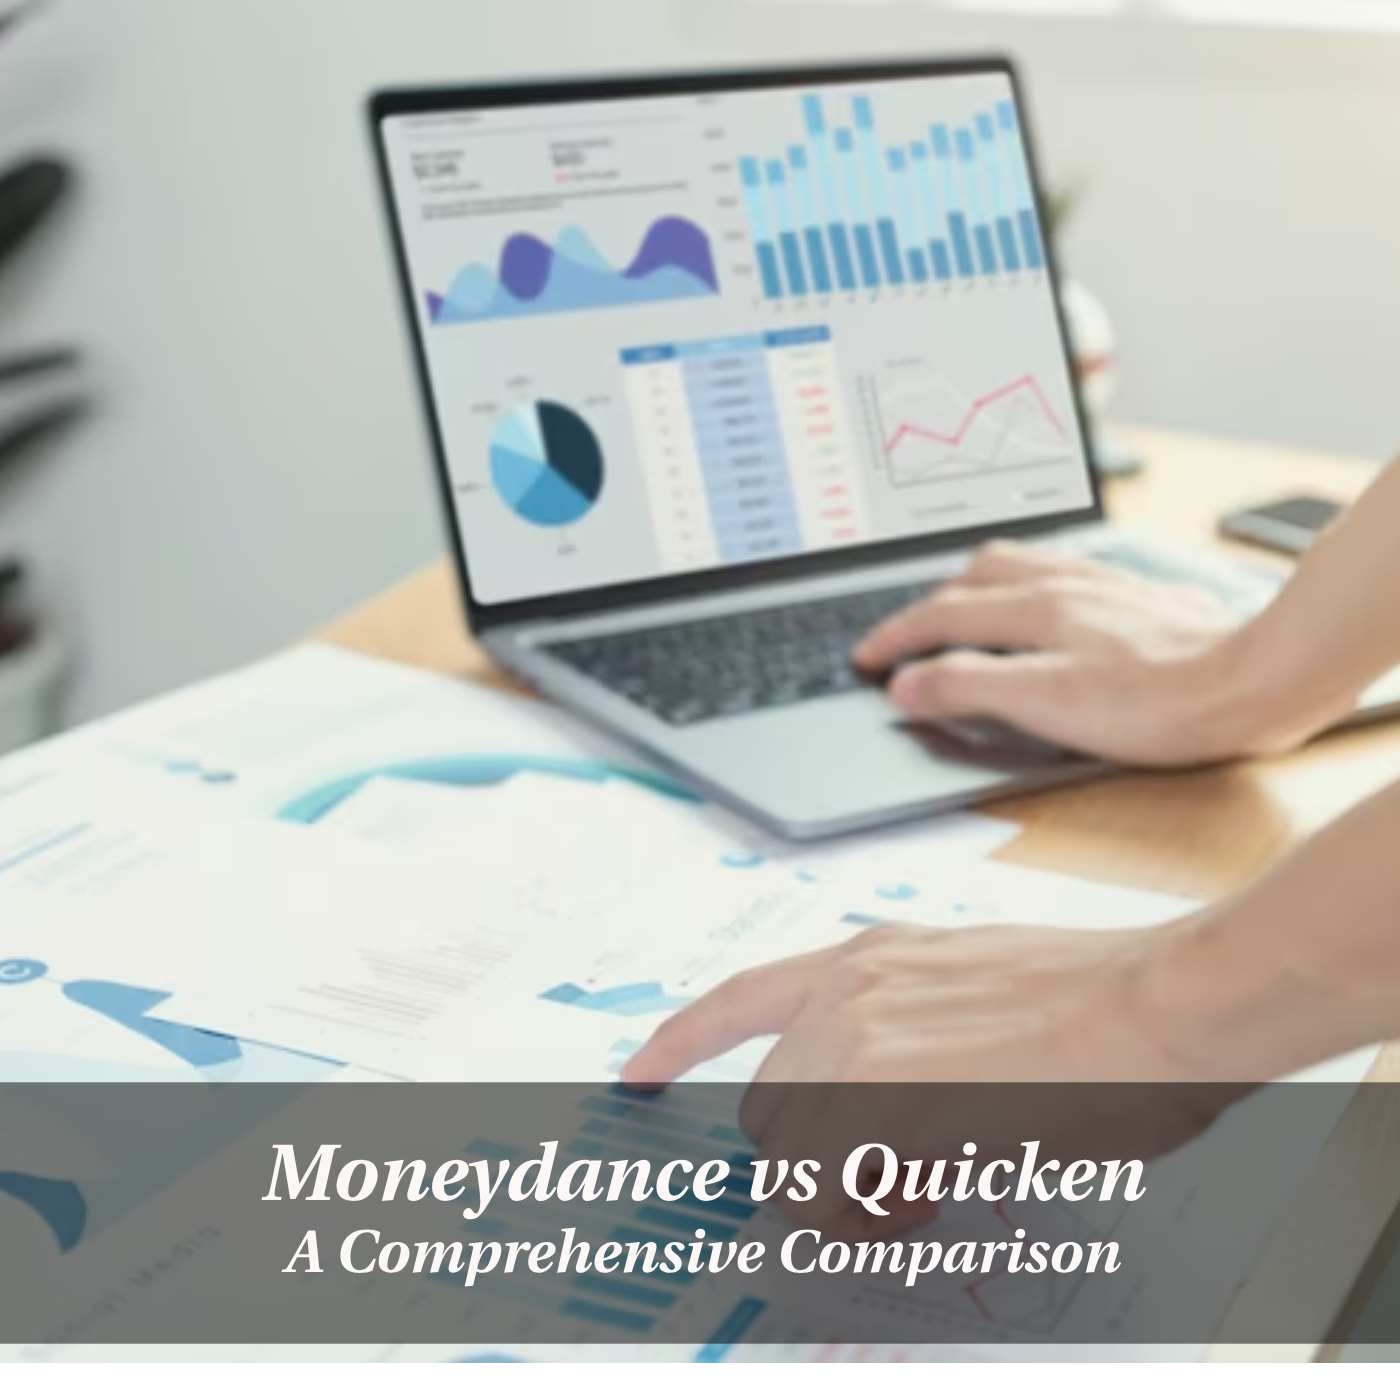 A Comprehensive Comparison of Moneydance vs Quicken